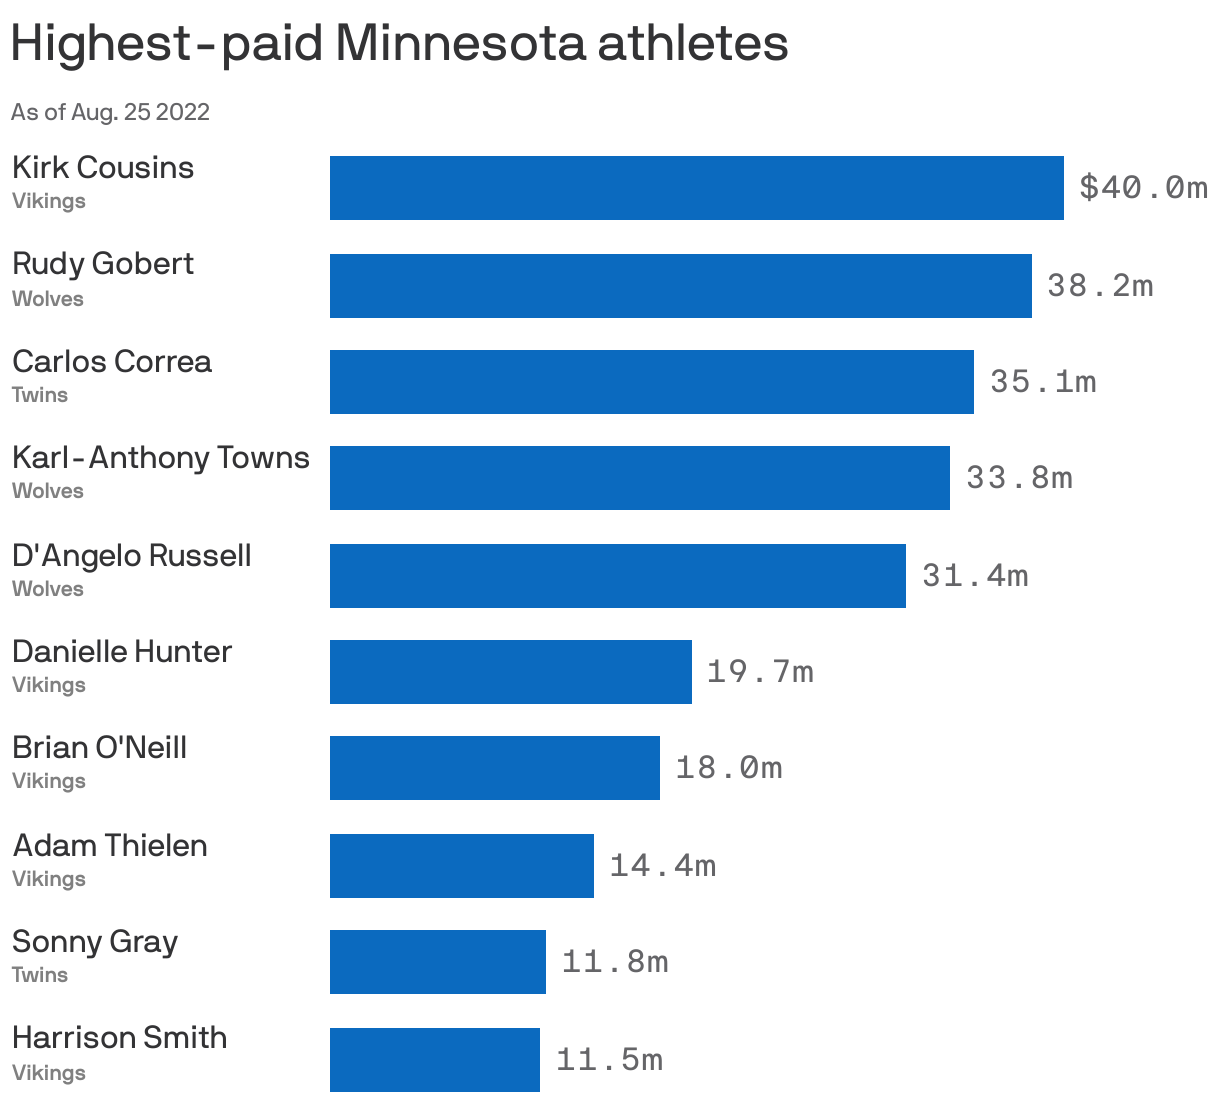 Highest-paid Minnesota athletes